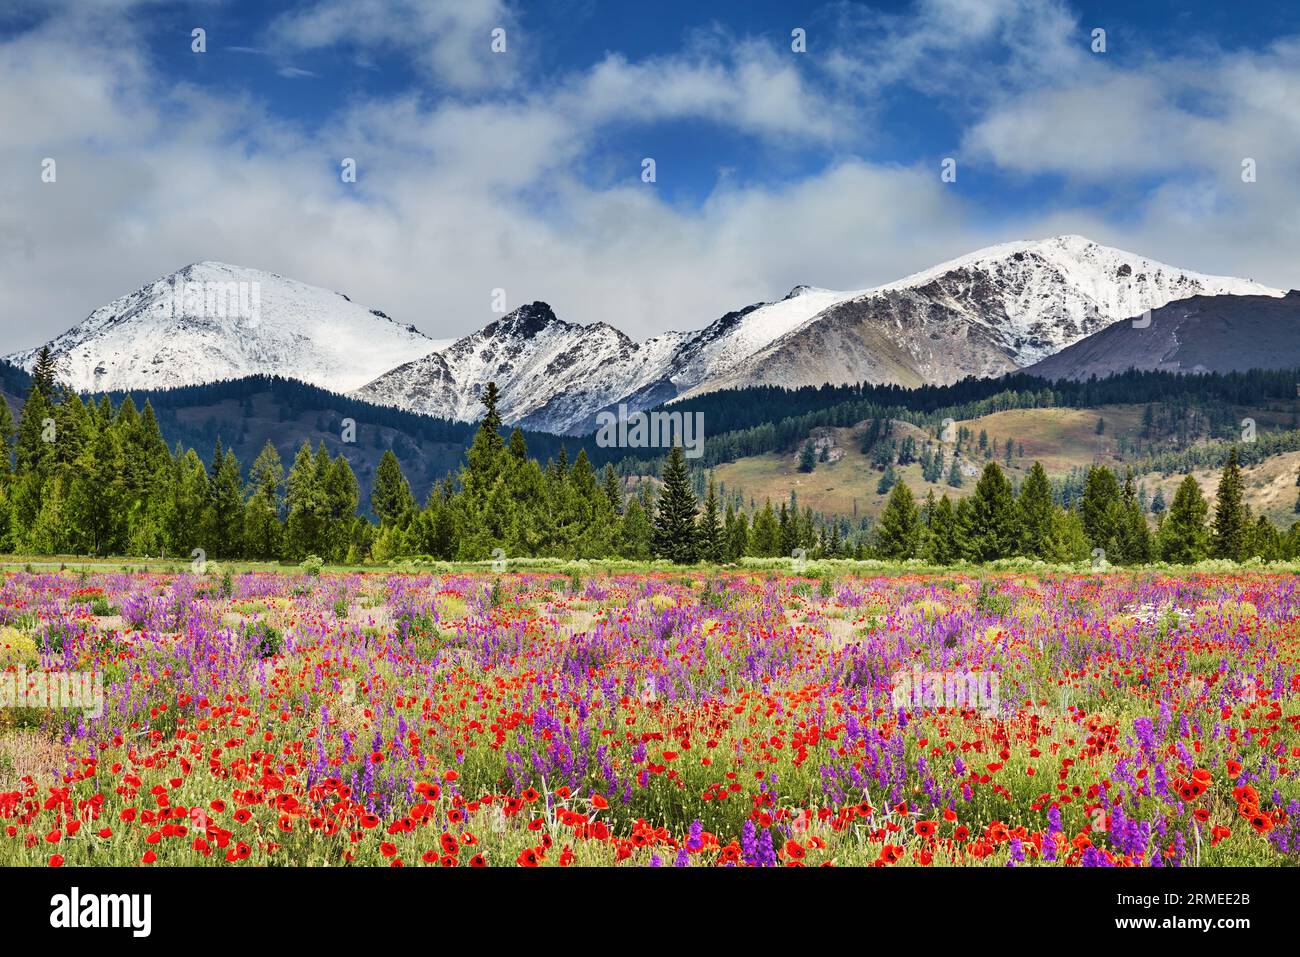 Paysage avec des montagnes enneigées, forêt et champ fleuri avec des fleurs sauvages Banque D'Images